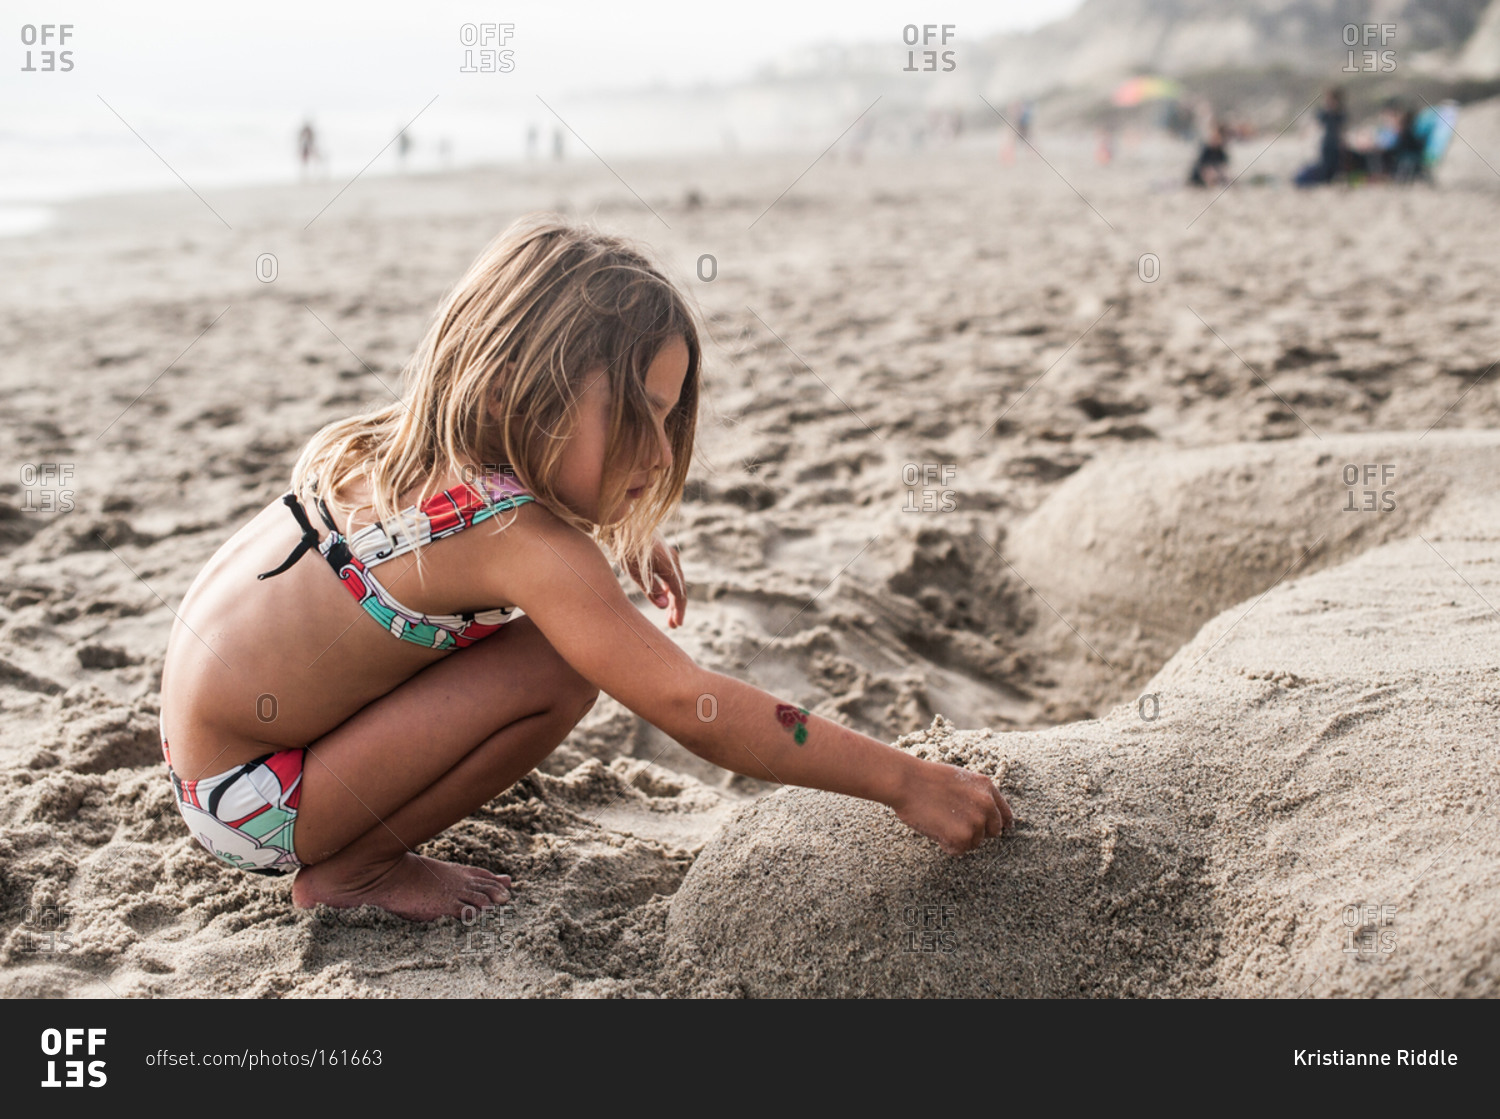 A little girl makes a sand sculpture